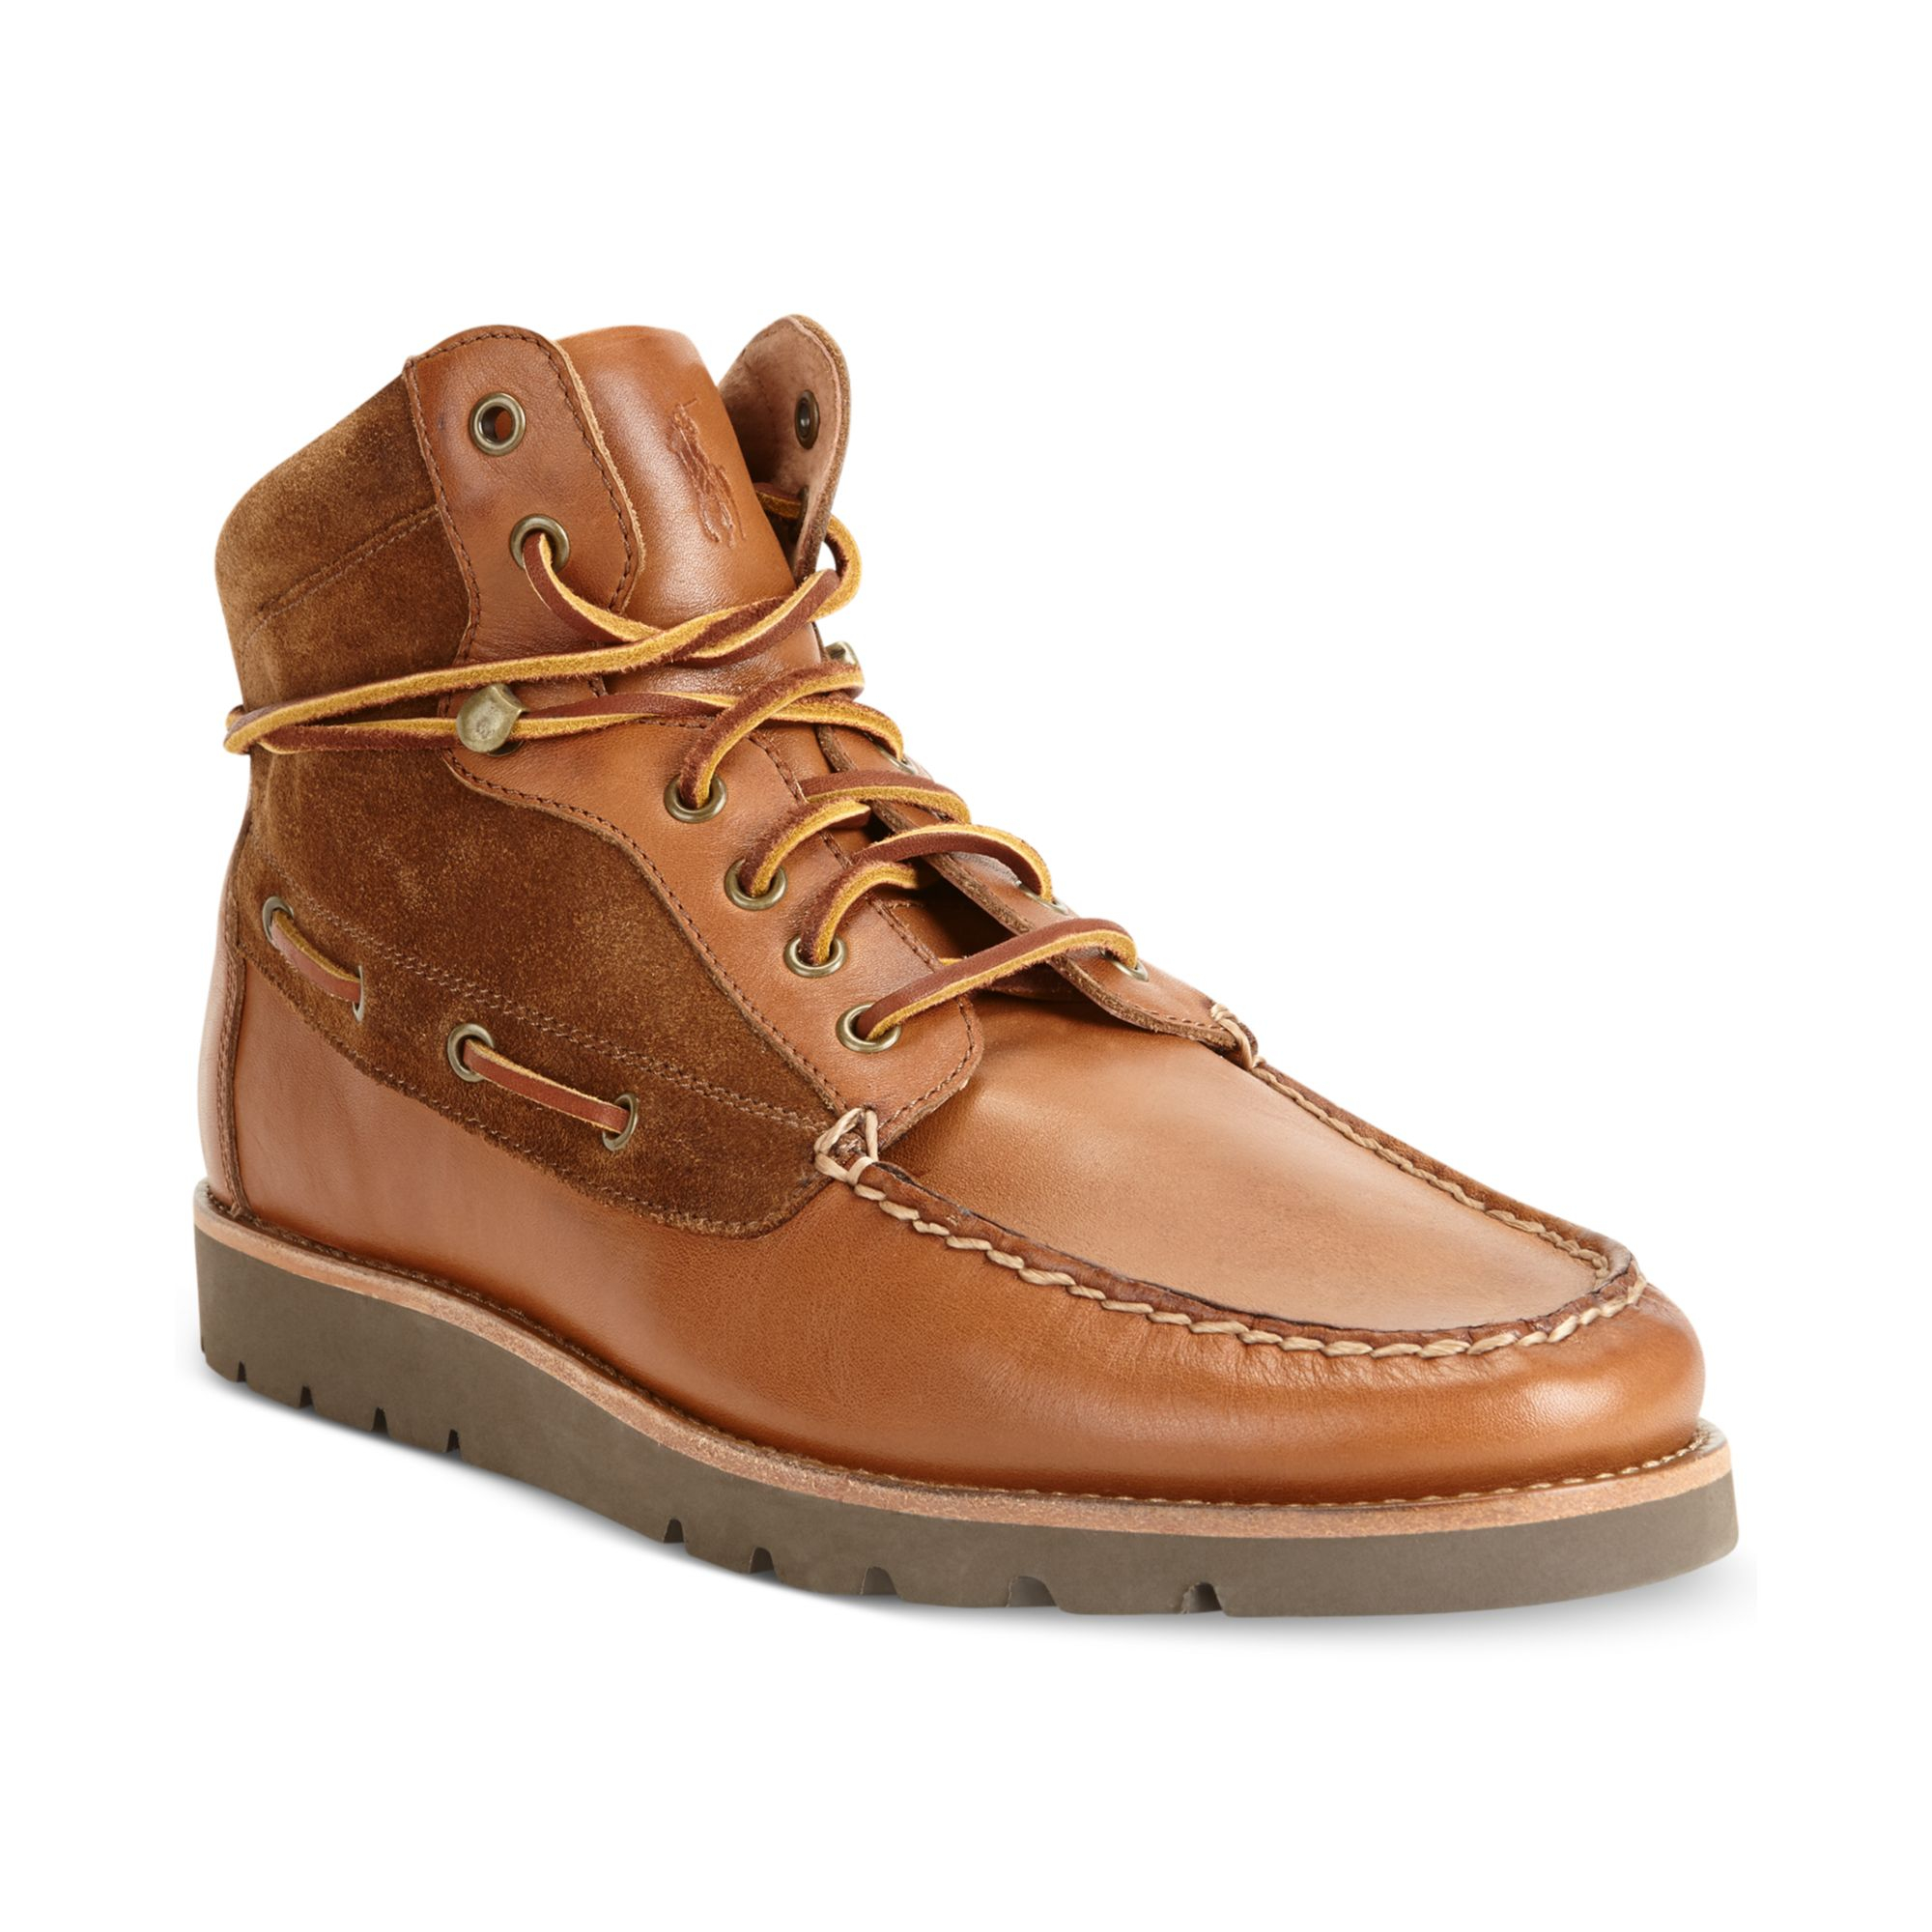 macys ralph lauren boots, hot sale off 62% - www.thiruvallurinfo.com